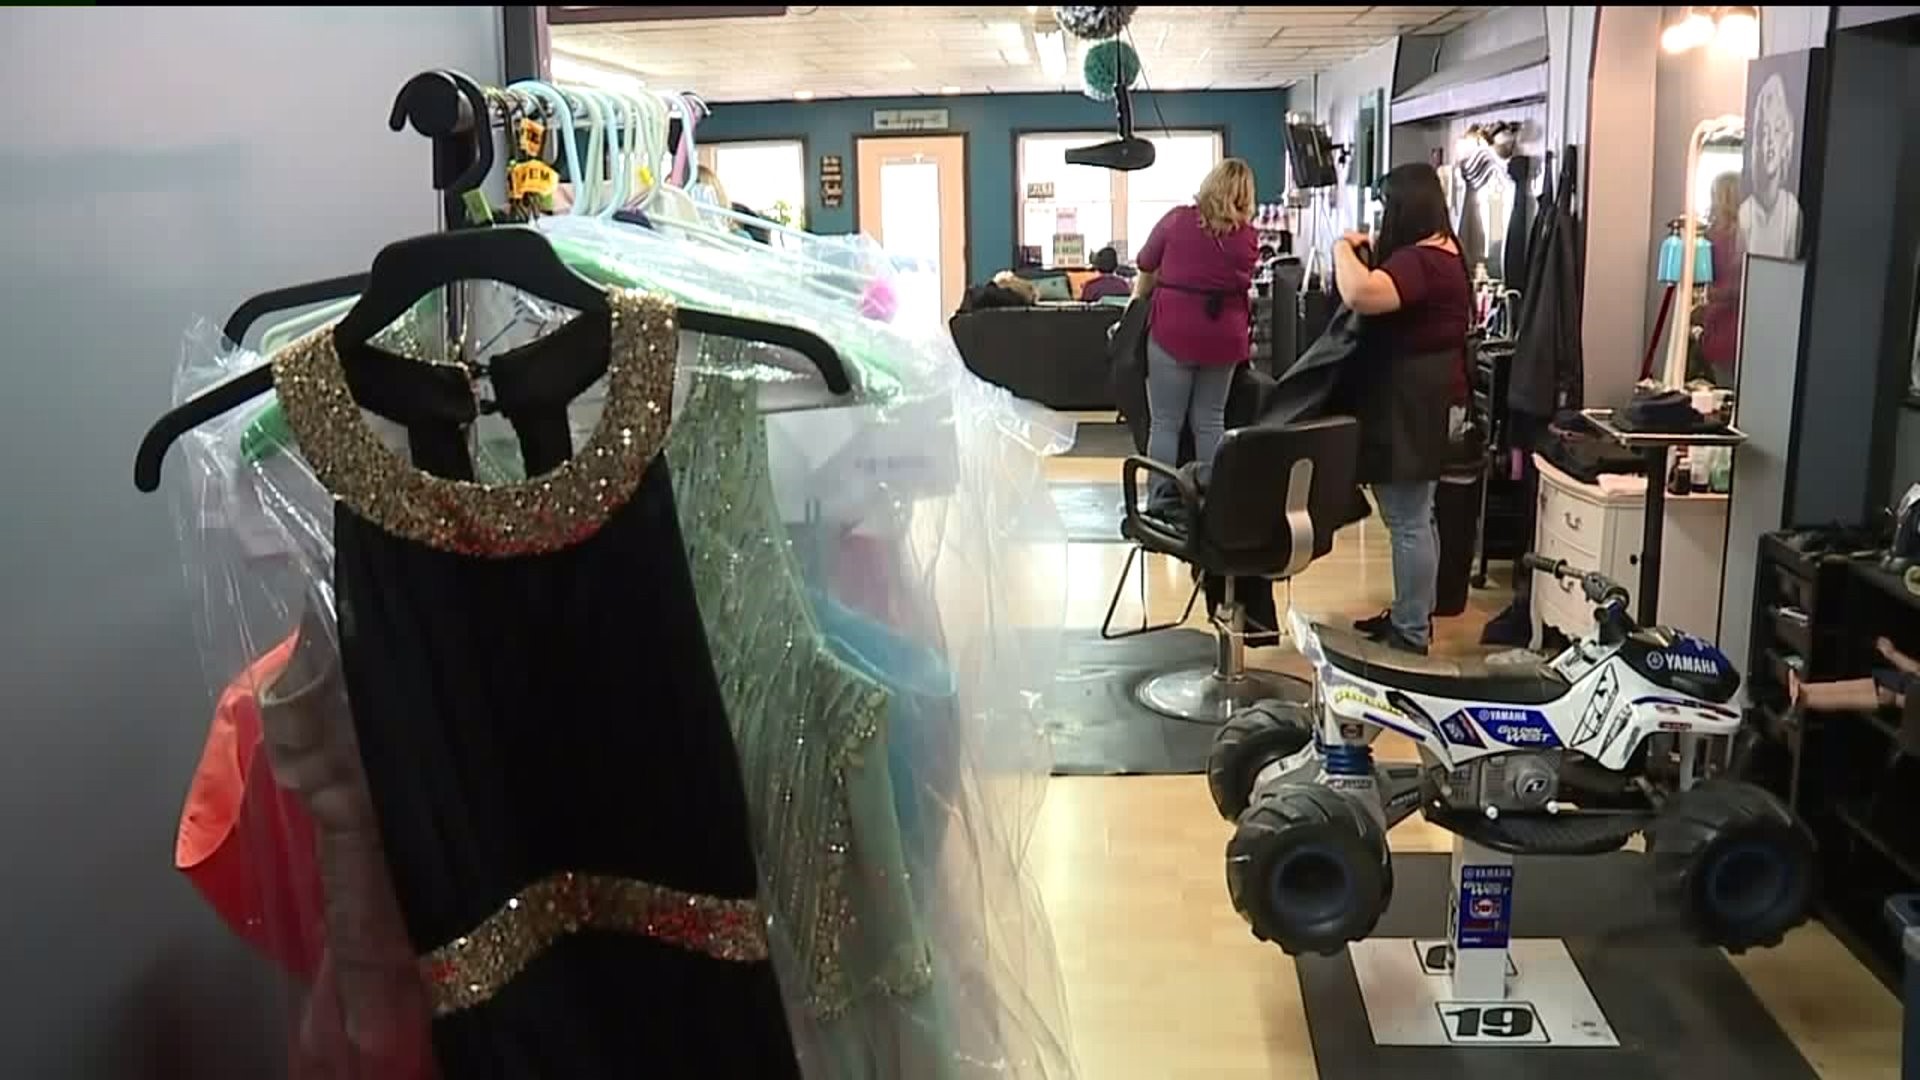 Salon Donates Free Prom Dresses